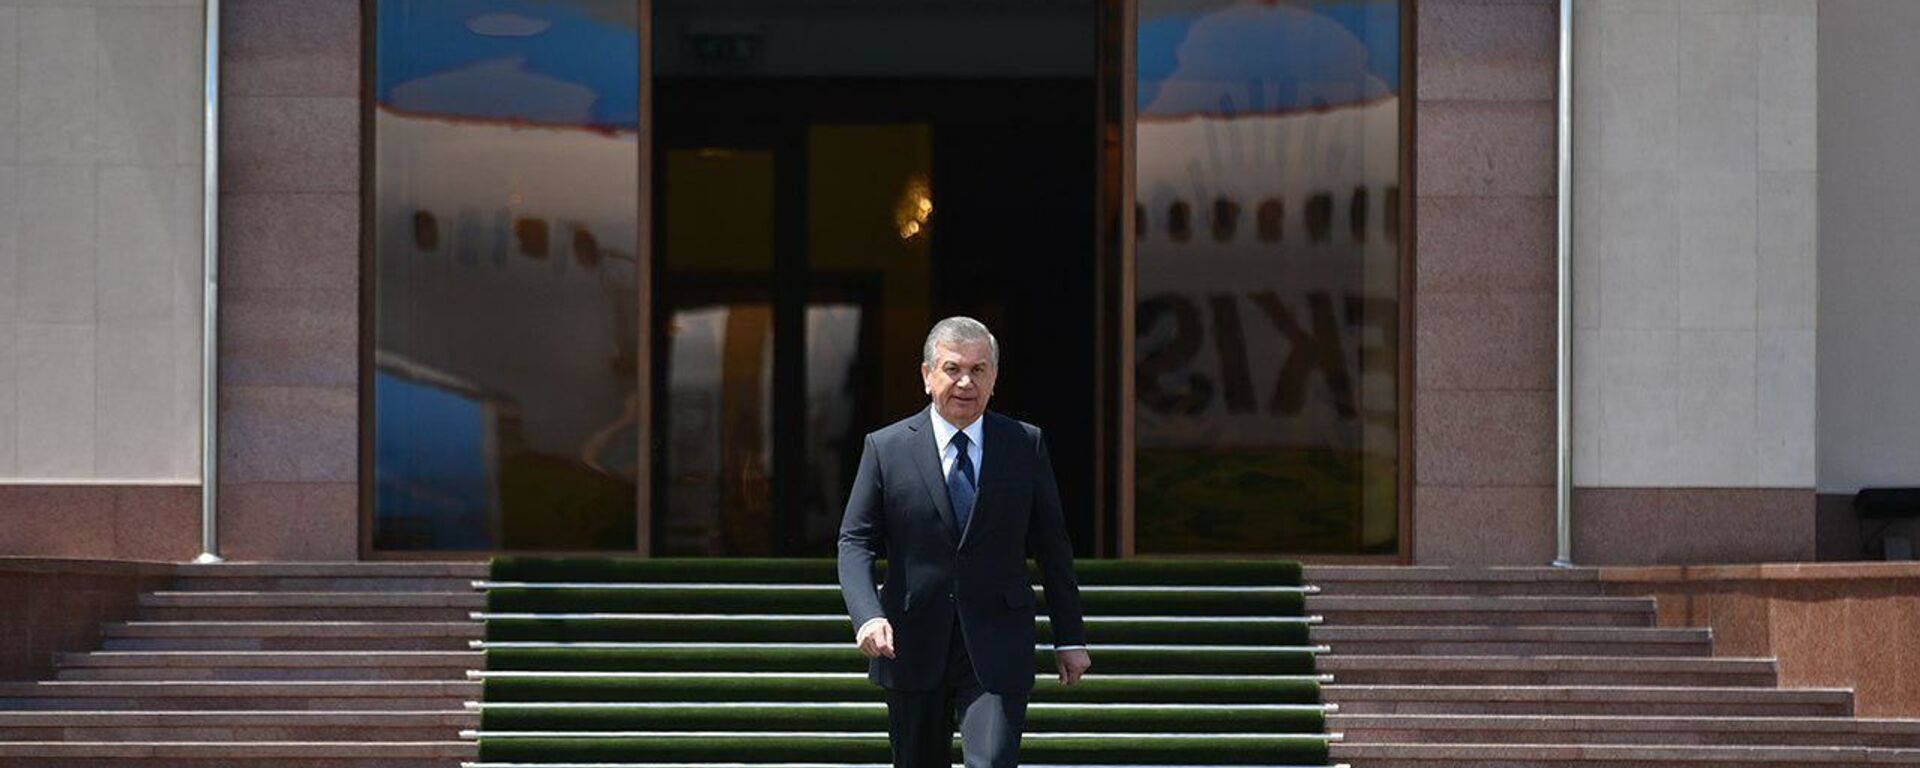 Prezident Uzbekistana Shavkat Mirziyoyev otbil v Moskvu s rabochim vizitom - Sputnik O‘zbekiston, 1920, 31.05.2021